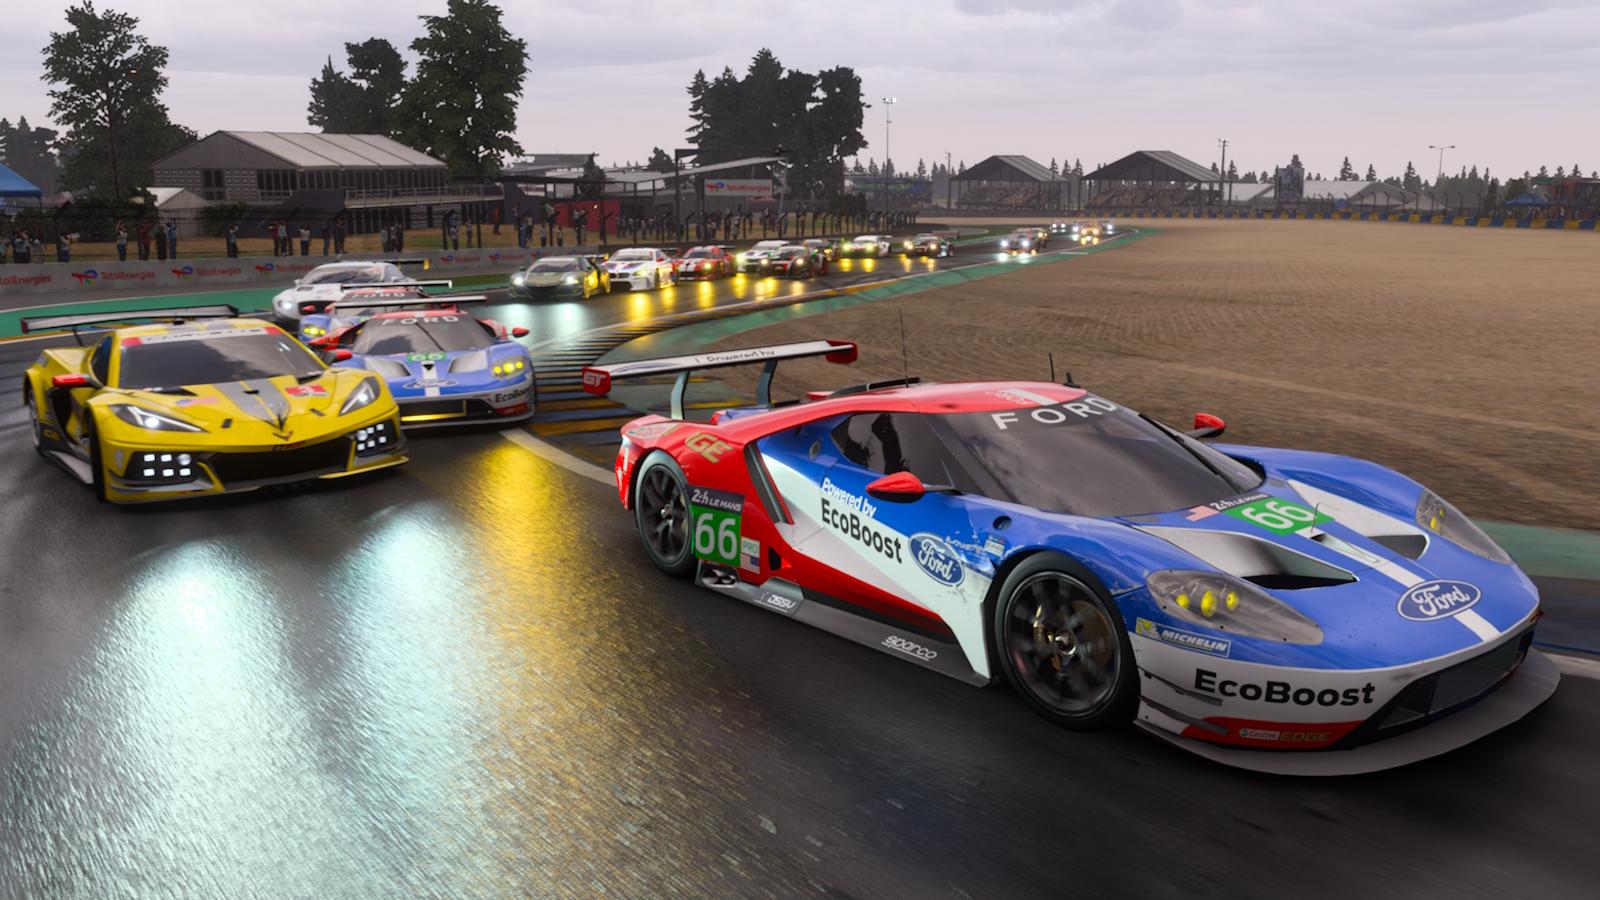 Forza Motorsport 2023: Neue Details zum Multiplayer enthüllt